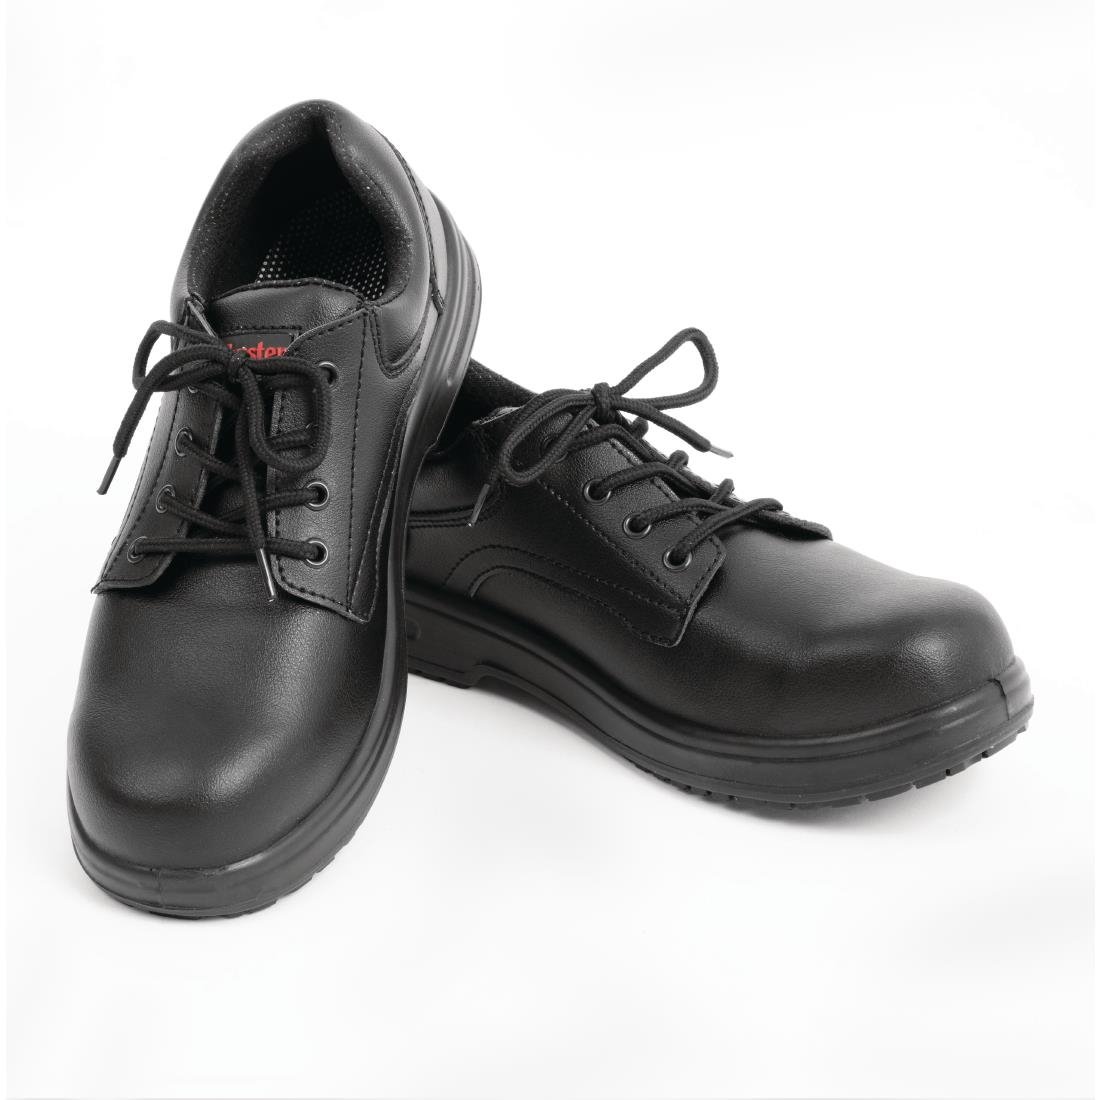 BB498-36 Slipbuster Basic Shoe Slip Resistant